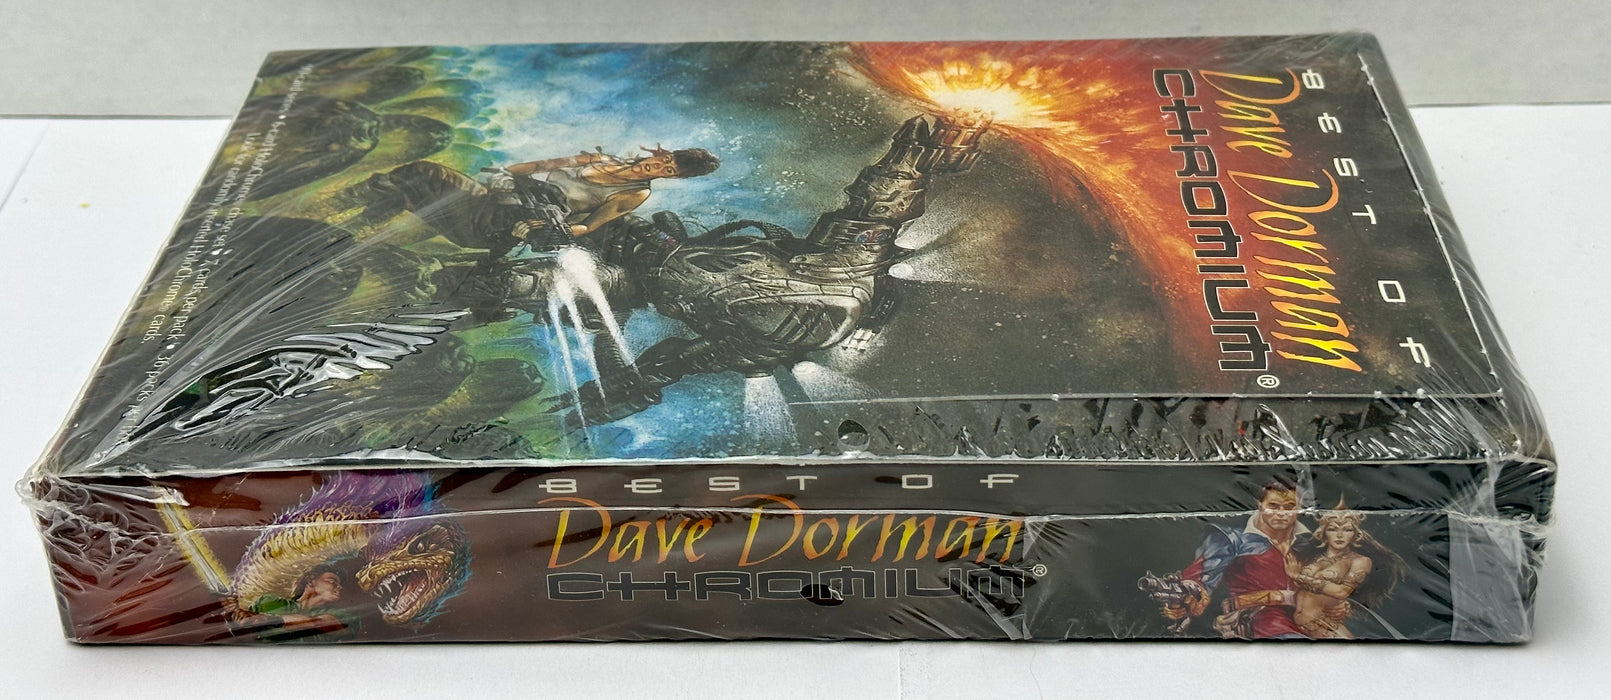 1996 Best of Dave Dorman Chromium Fantasy Art Trading Card Box 36 Packs FPG   - TvMovieCards.com